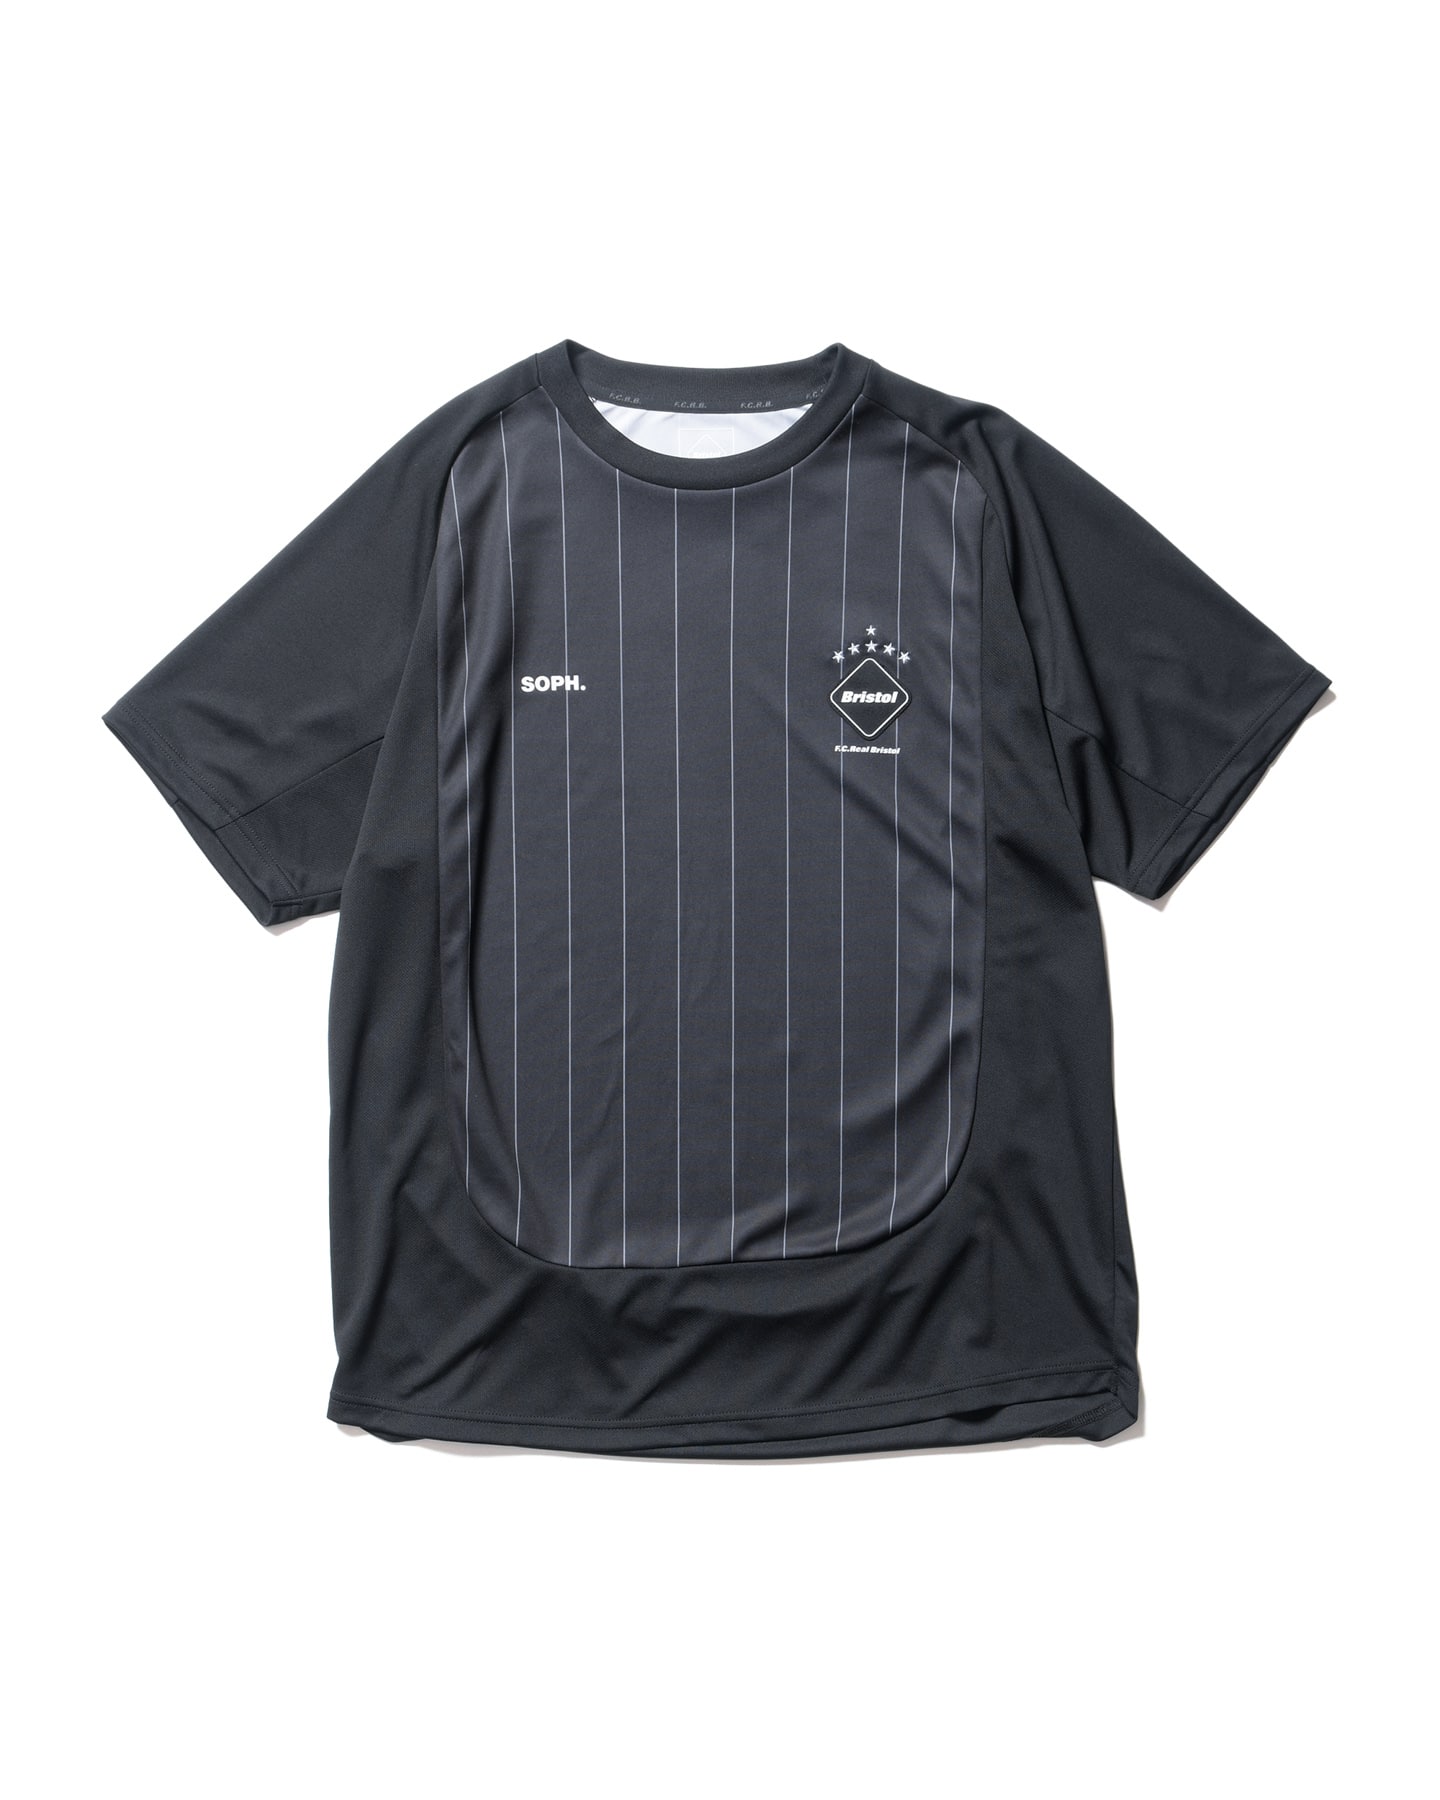 FCRB SOPH 【新品未使用・タグ付き】ゲームシャツ  ブラック サイズM着丈70センチ